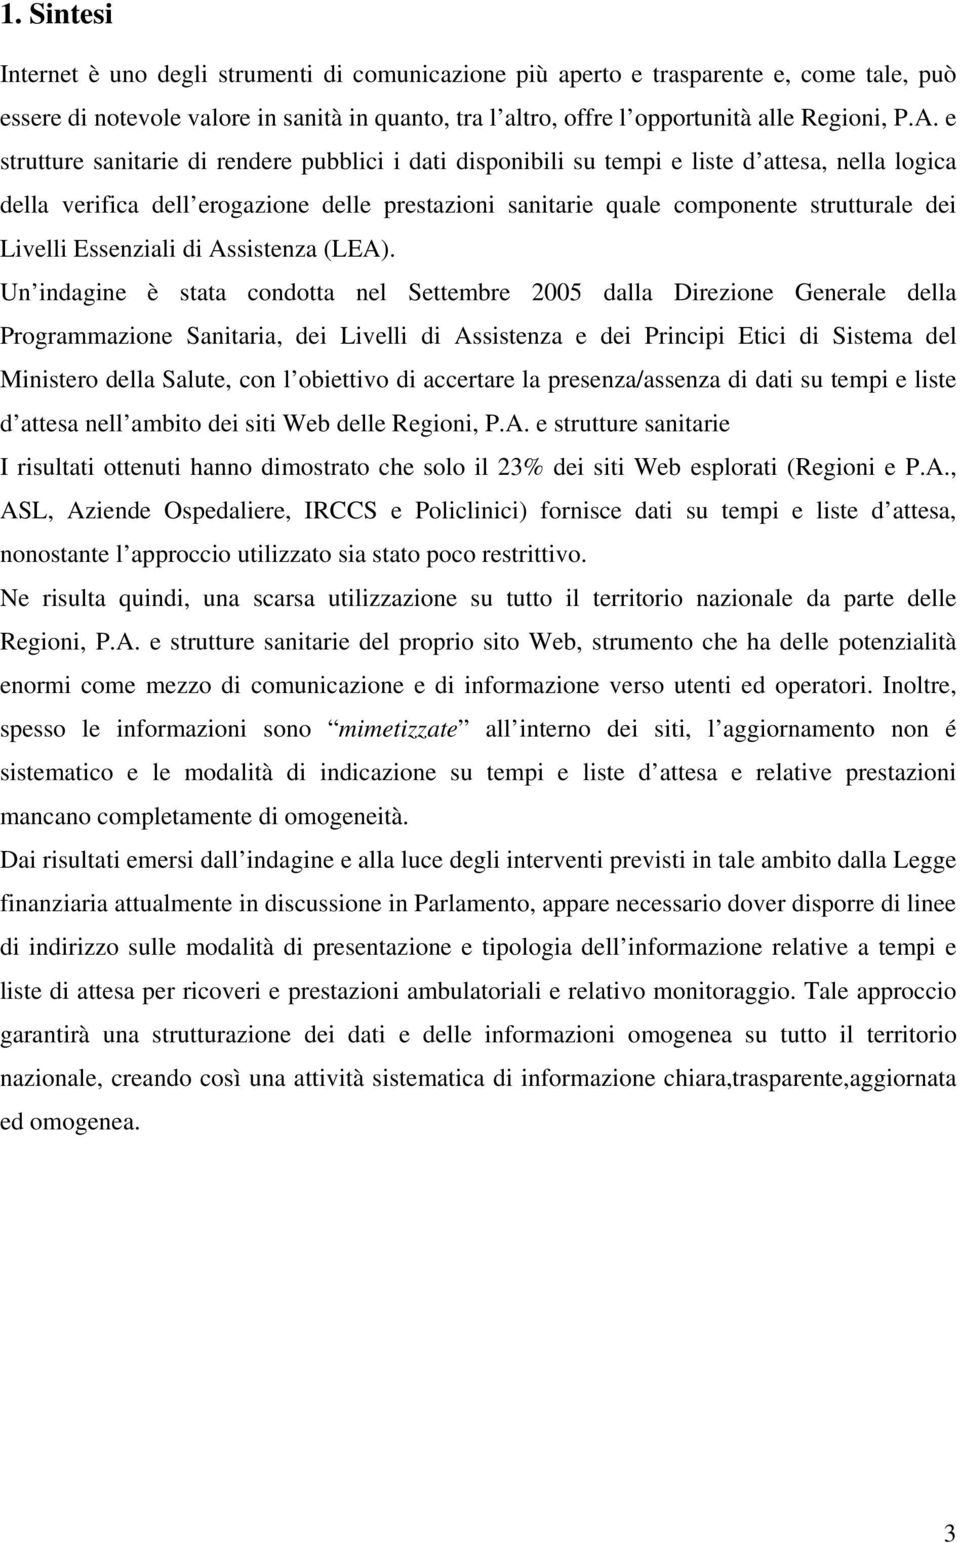 Livelli Essenziali di Assistenza (LEA).